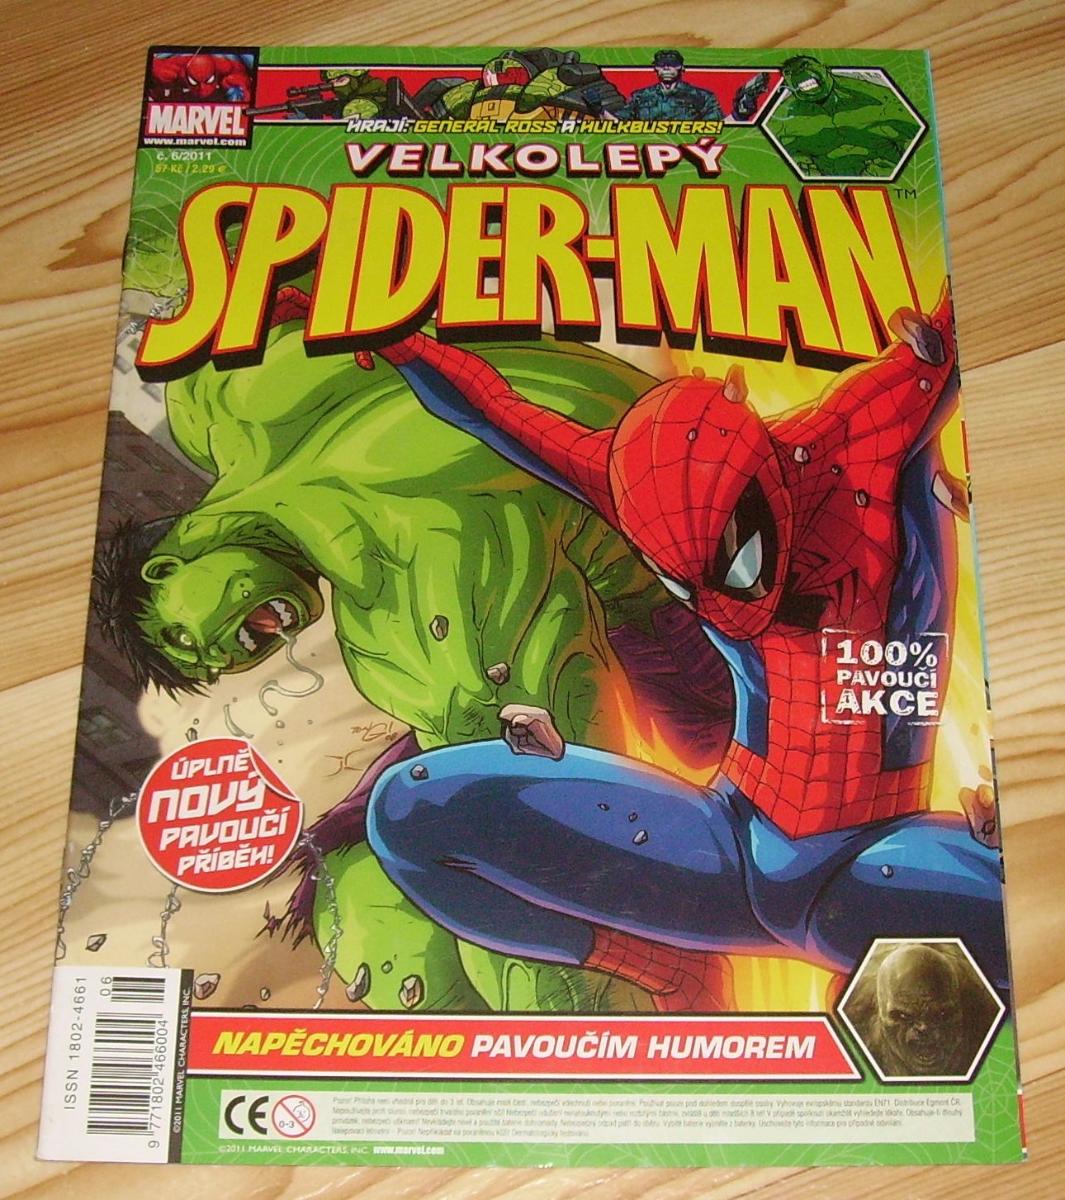 Velkolepý Spider-Man 2011/06